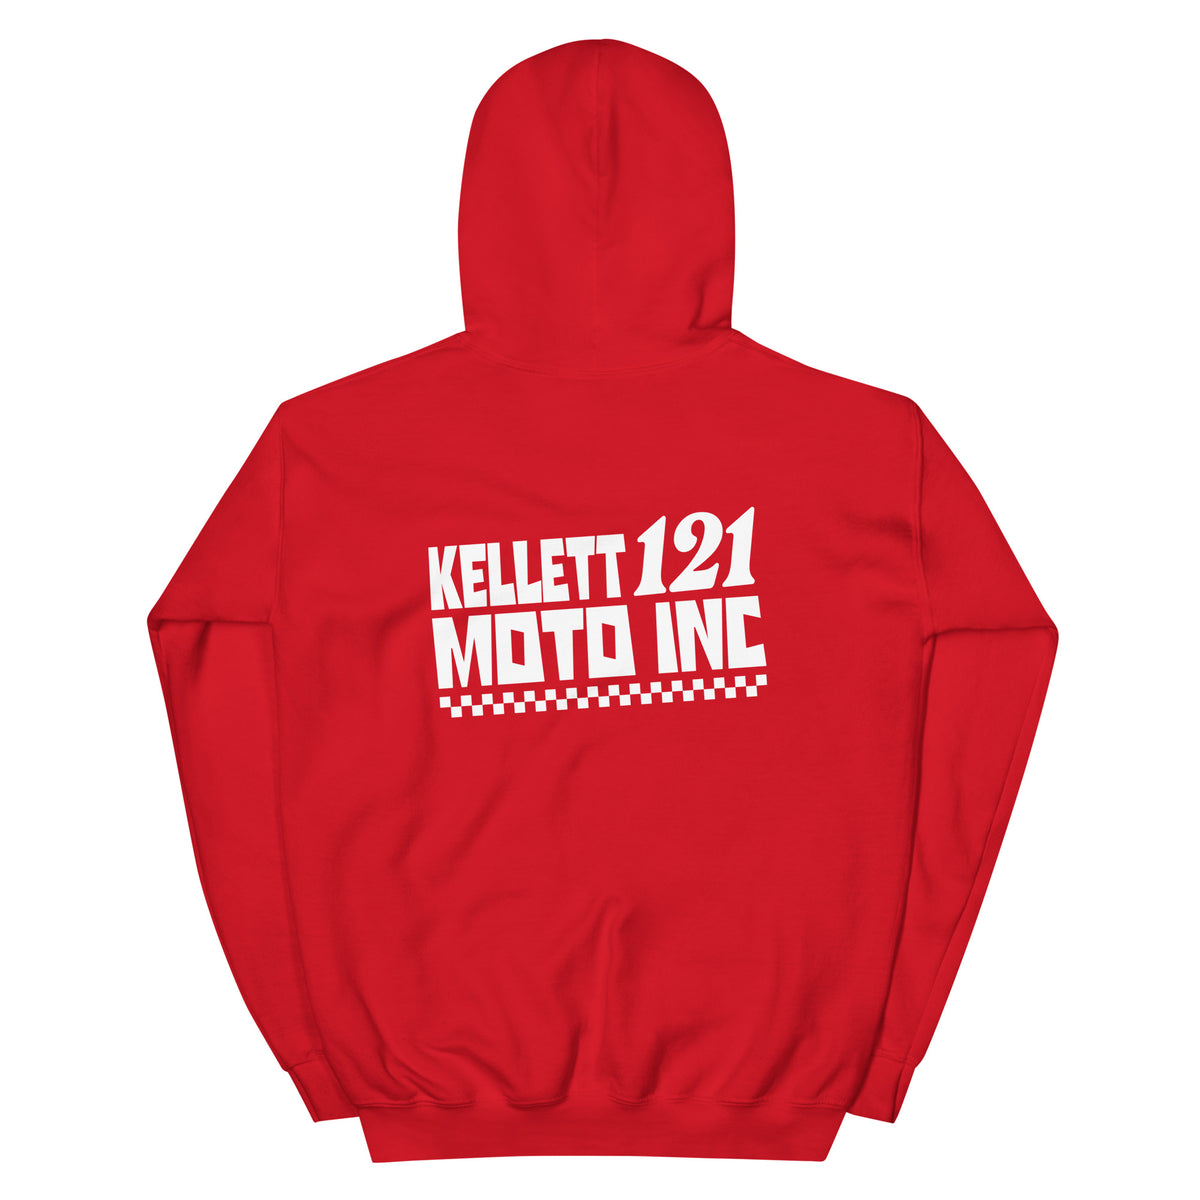 Kellett 121 - The Wall - Hoodie